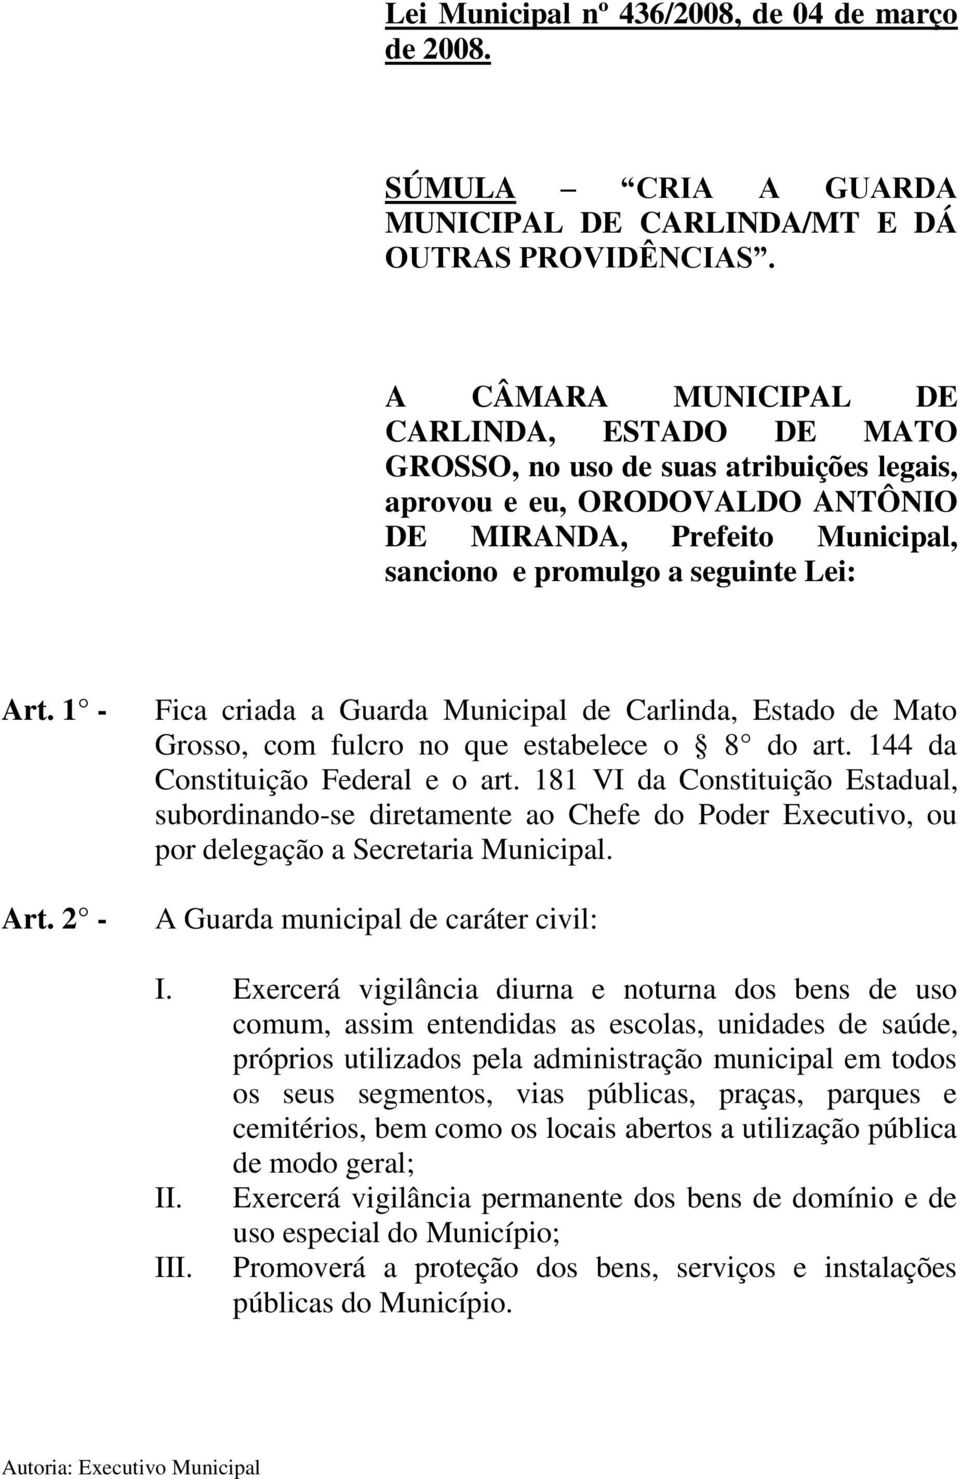 1 - Art. 2 - Fica criada a Guarda Municipal de Carlinda, Estado de Mato Grosso, com fulcro no que estabelece o 8 do art. 144 da Constituição Federal e o art.